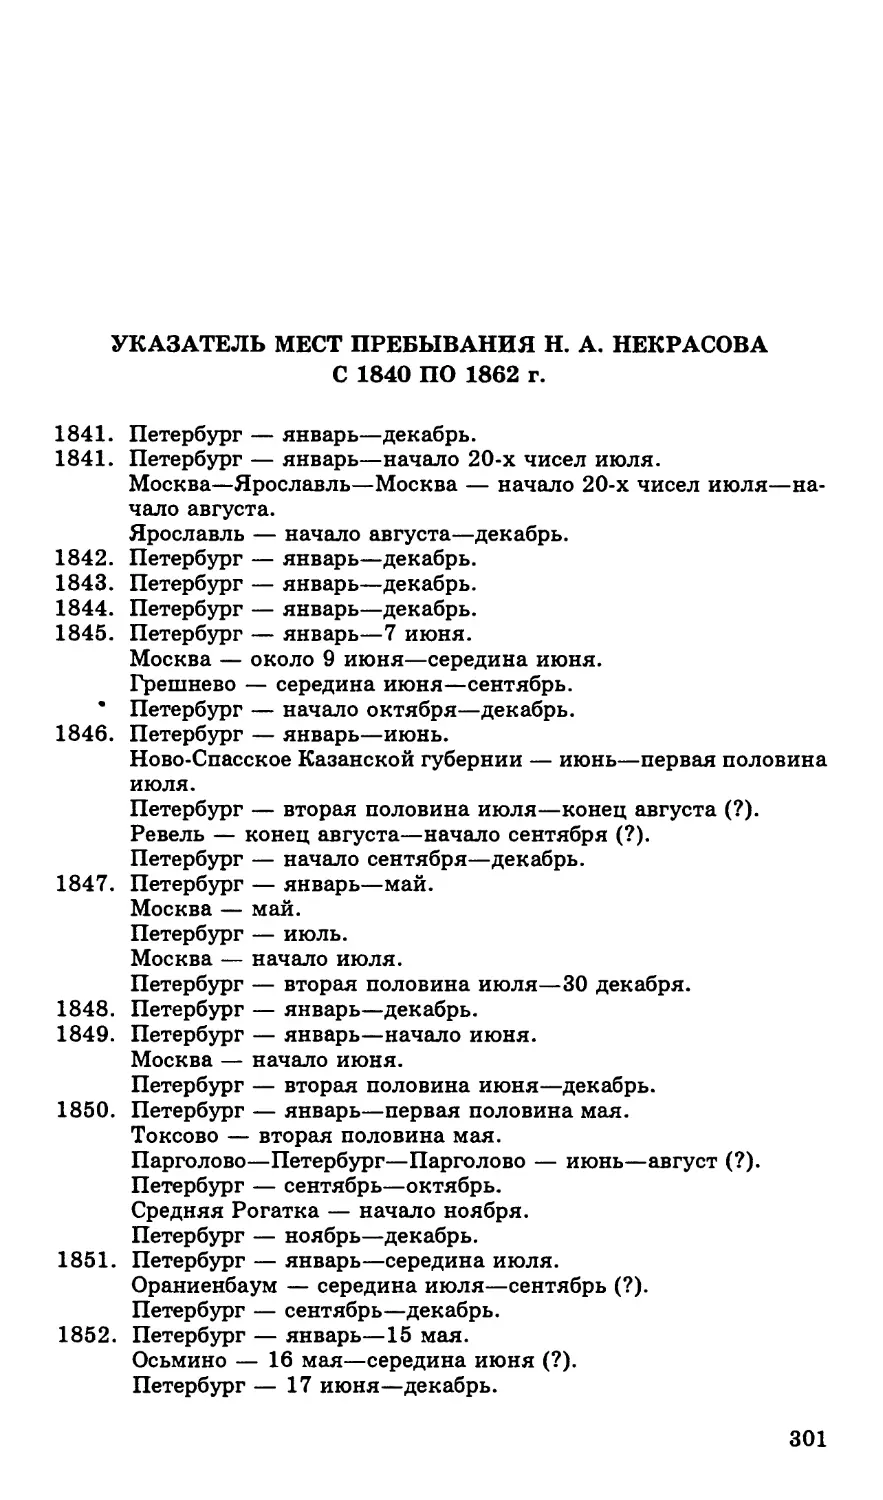 Указатель мест пребывания Н. А. Некрасова с 1840 по 1862 г